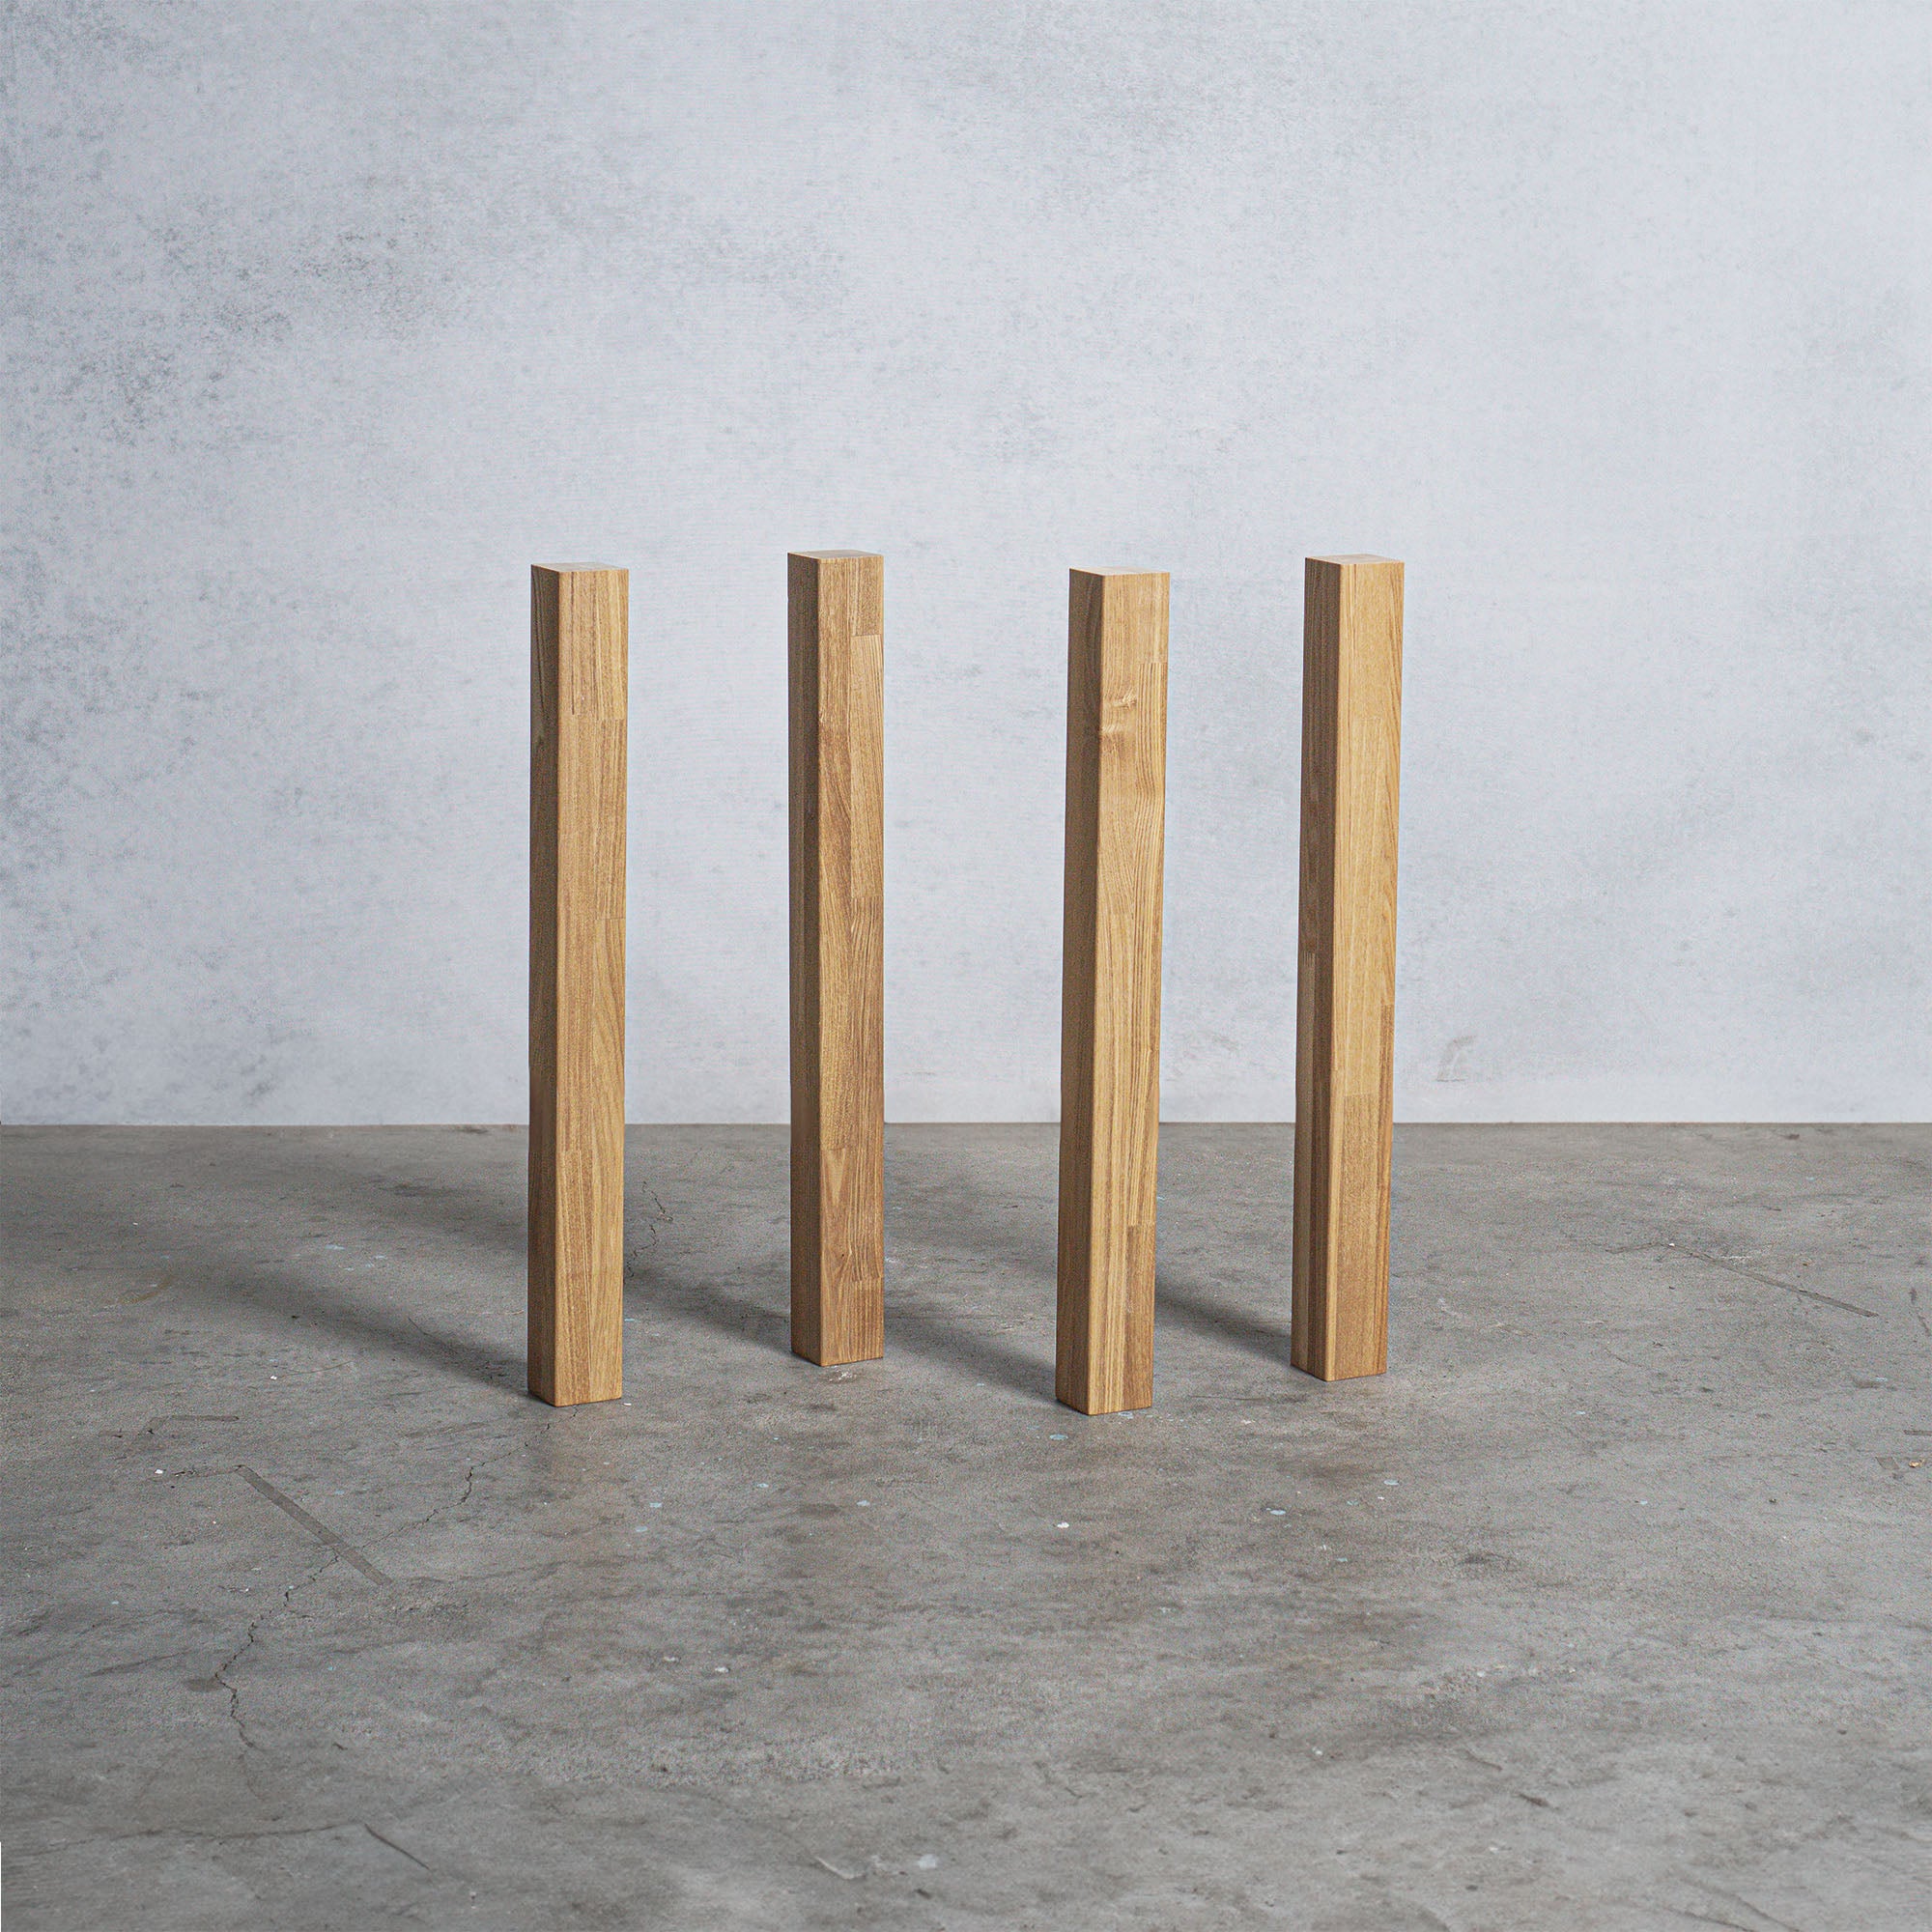 木製 テーブル脚 I型 オーダーメイド